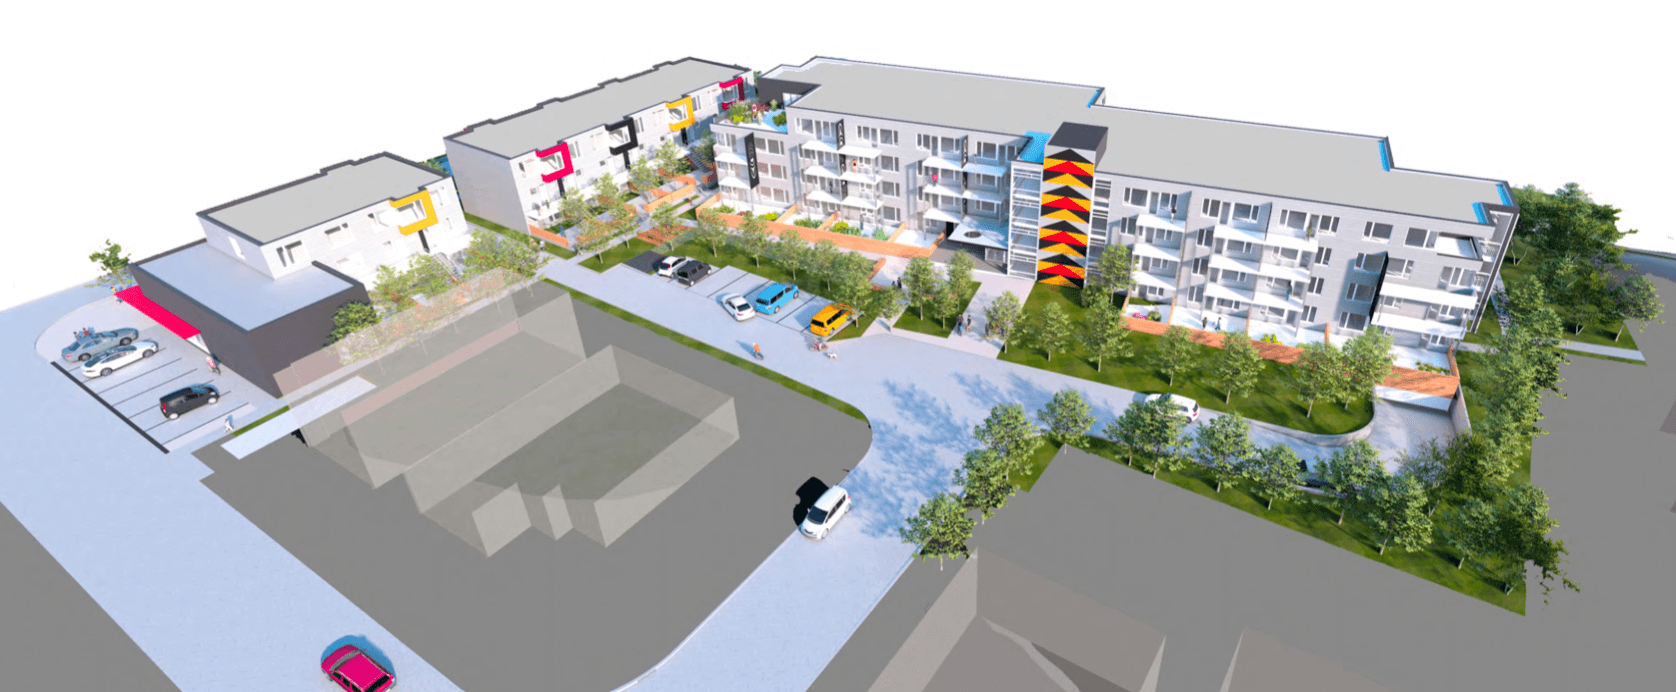 Aerial Rendering of Xwmélch’sten project by Hiy̓ám̓ Housing